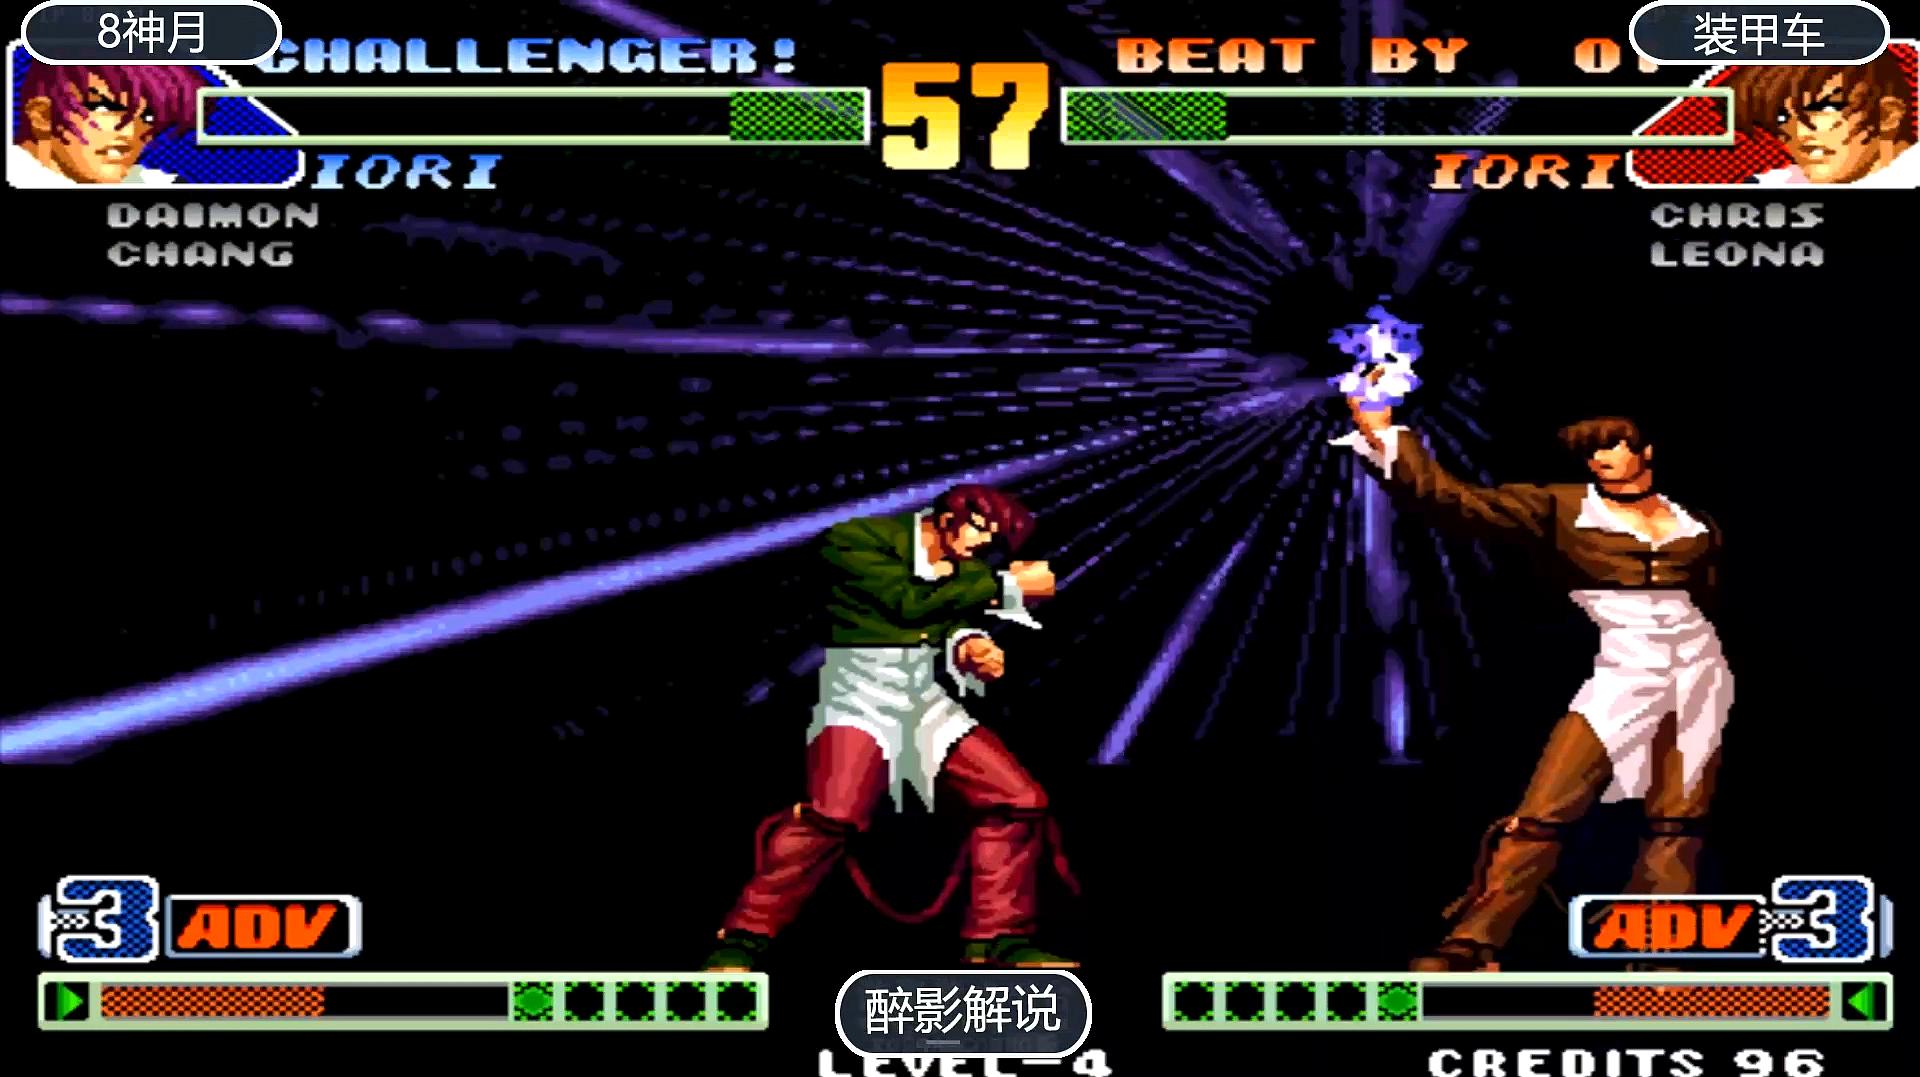 醉影经典游戏视频:《拳皇98》之暴走八神的视频合集